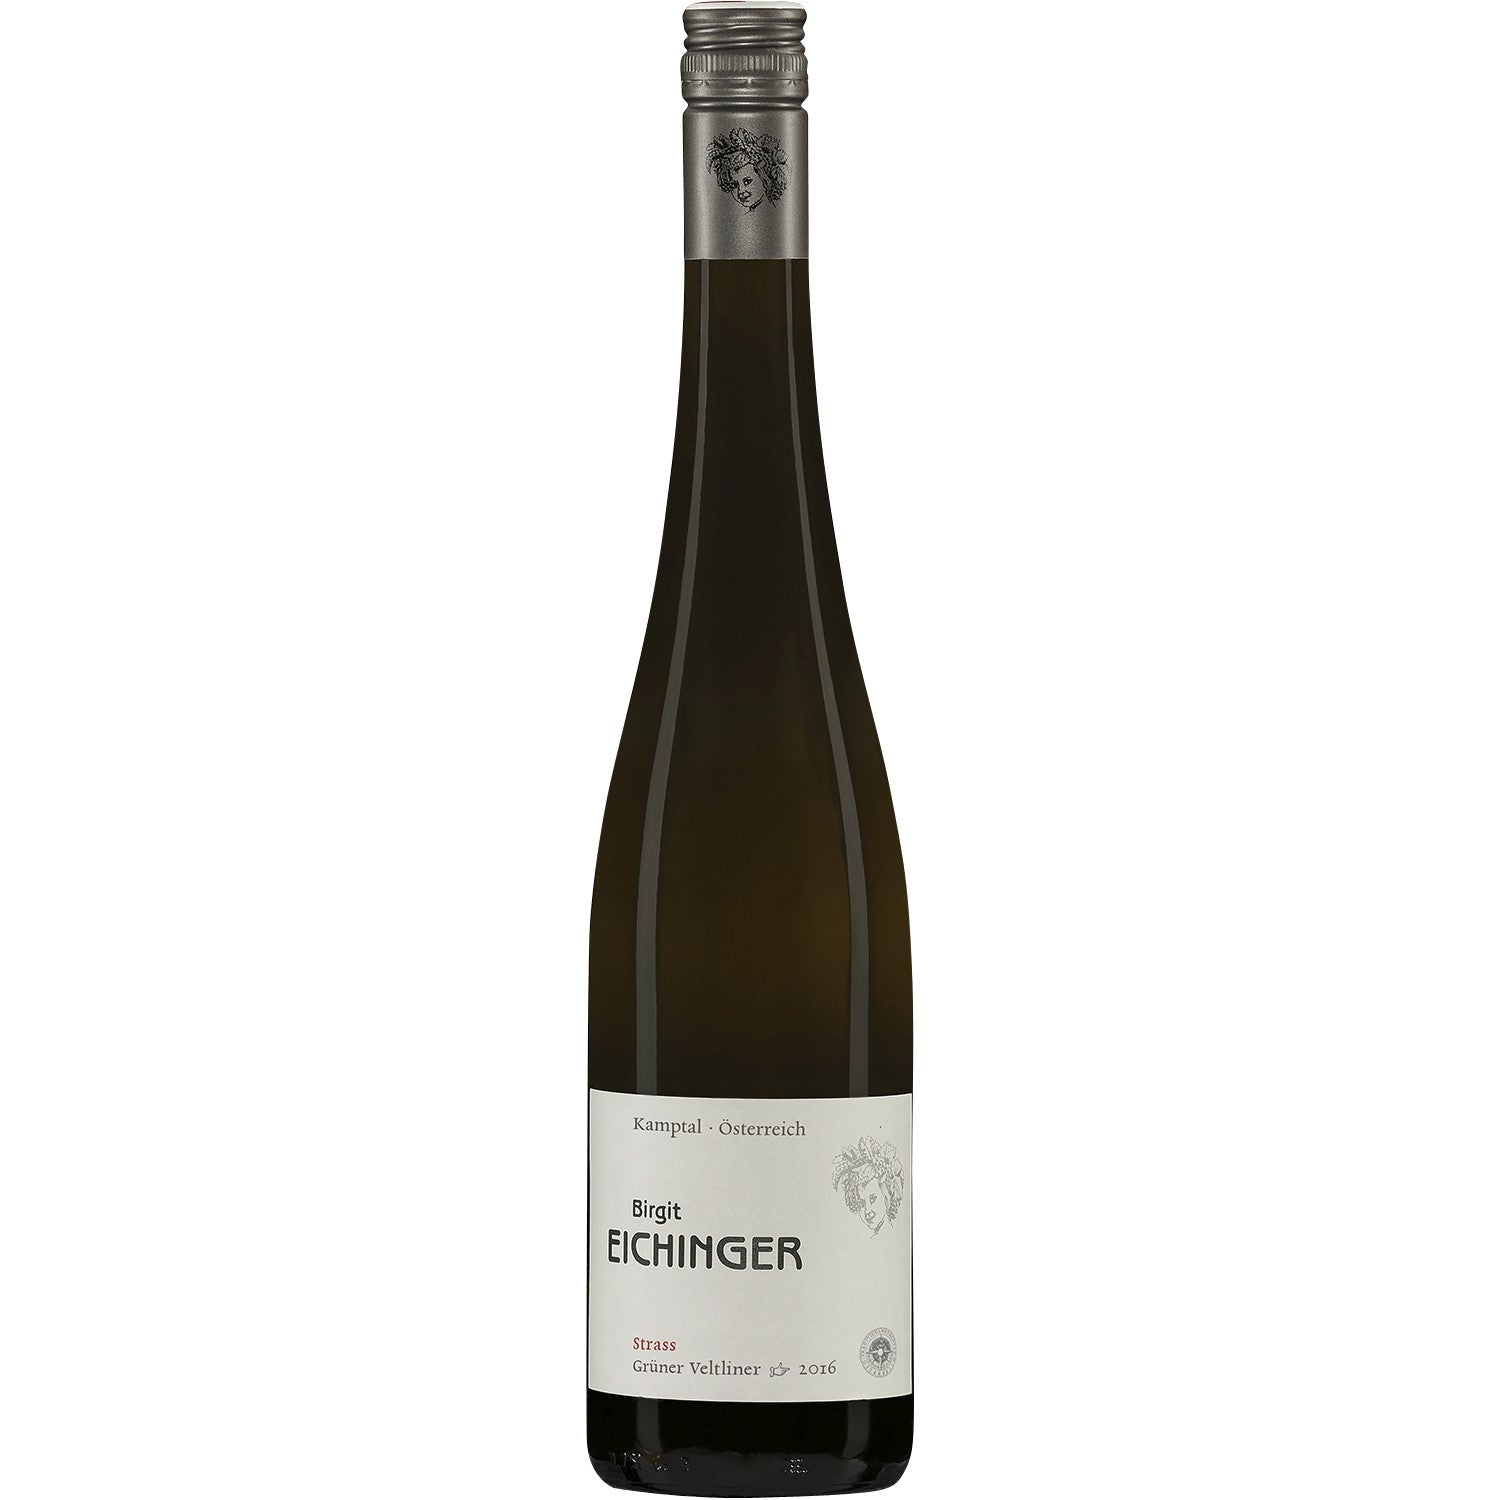 Birgit Eichinger Grüner Veltliner Strass Kamptal DAC Weißwein Wein trocken Österreich (3 x 0.75l) - Versanel -